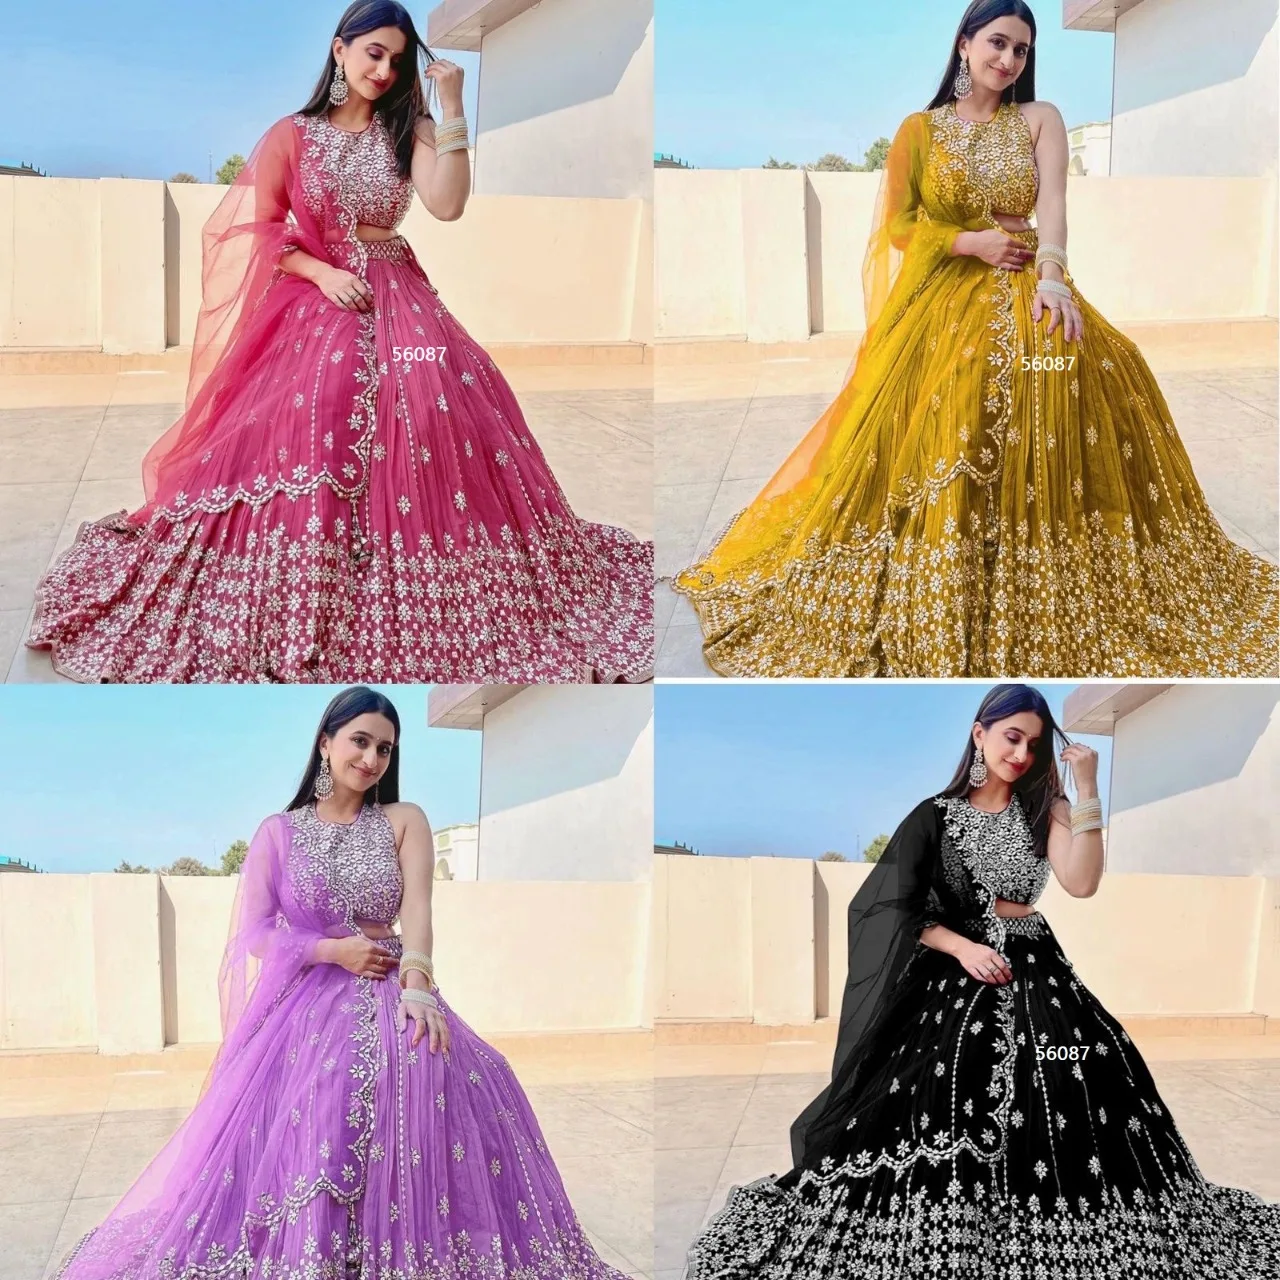 Sabyasachi Designer Lehenga Choli With High Quality Embroidery - Etsy |  Party wear lehenga, Designer lehenga choli, Indian bridesmaid dresses